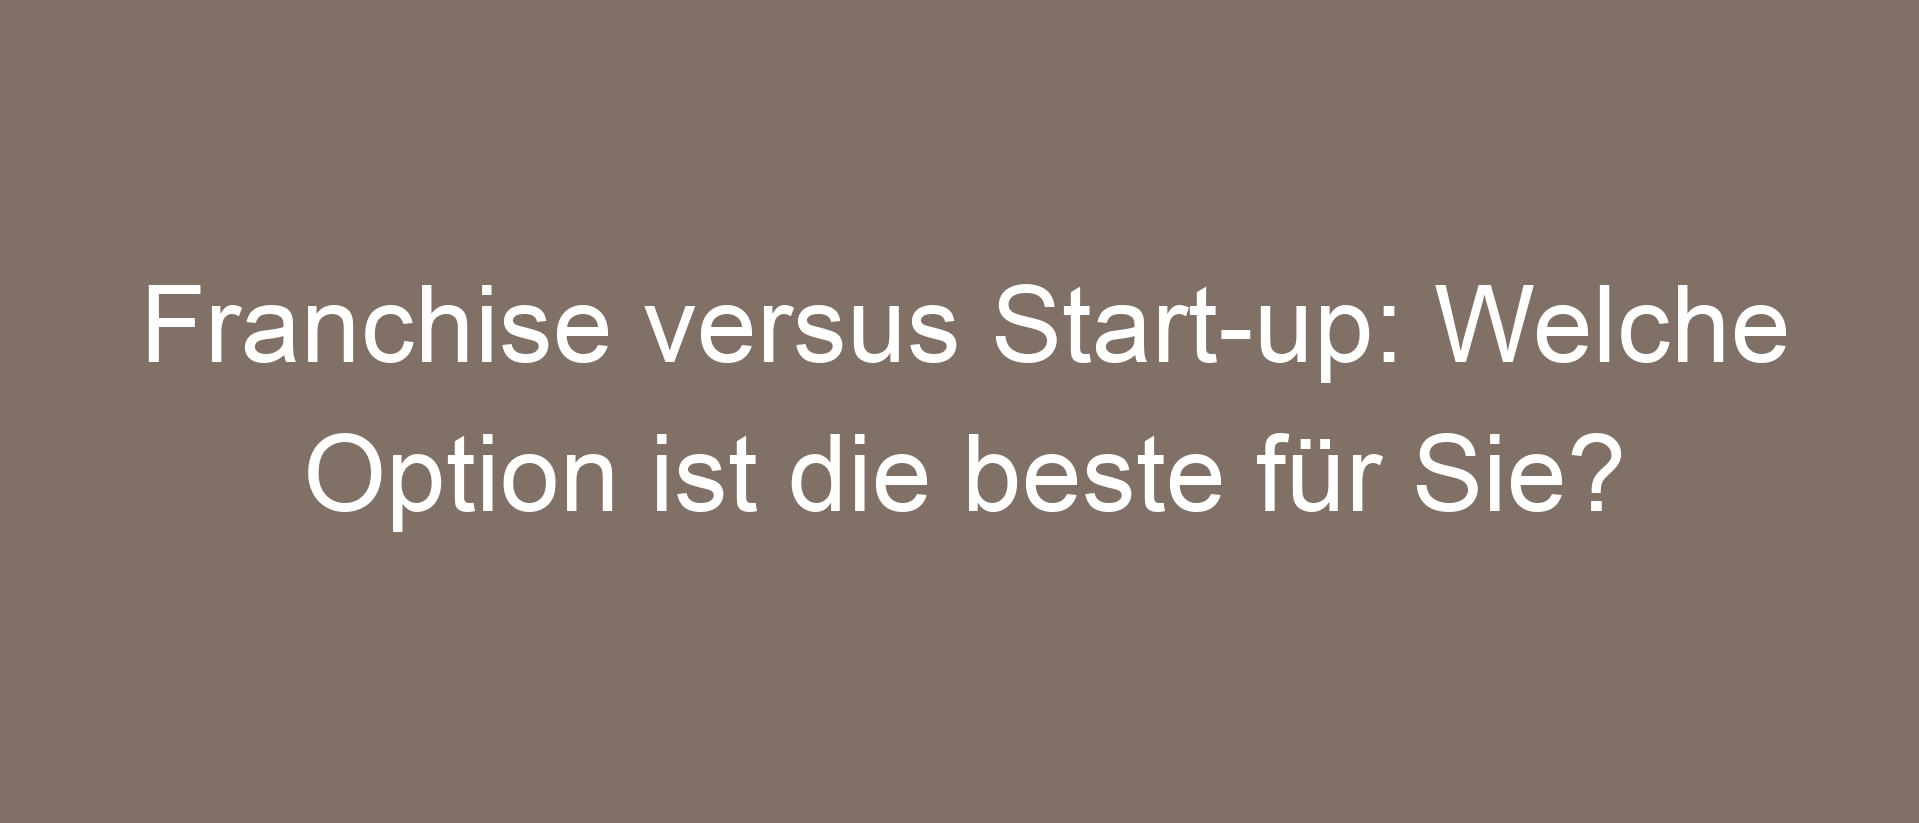 Franchise versus Start-up: Welche Option ist die beste für Sie?